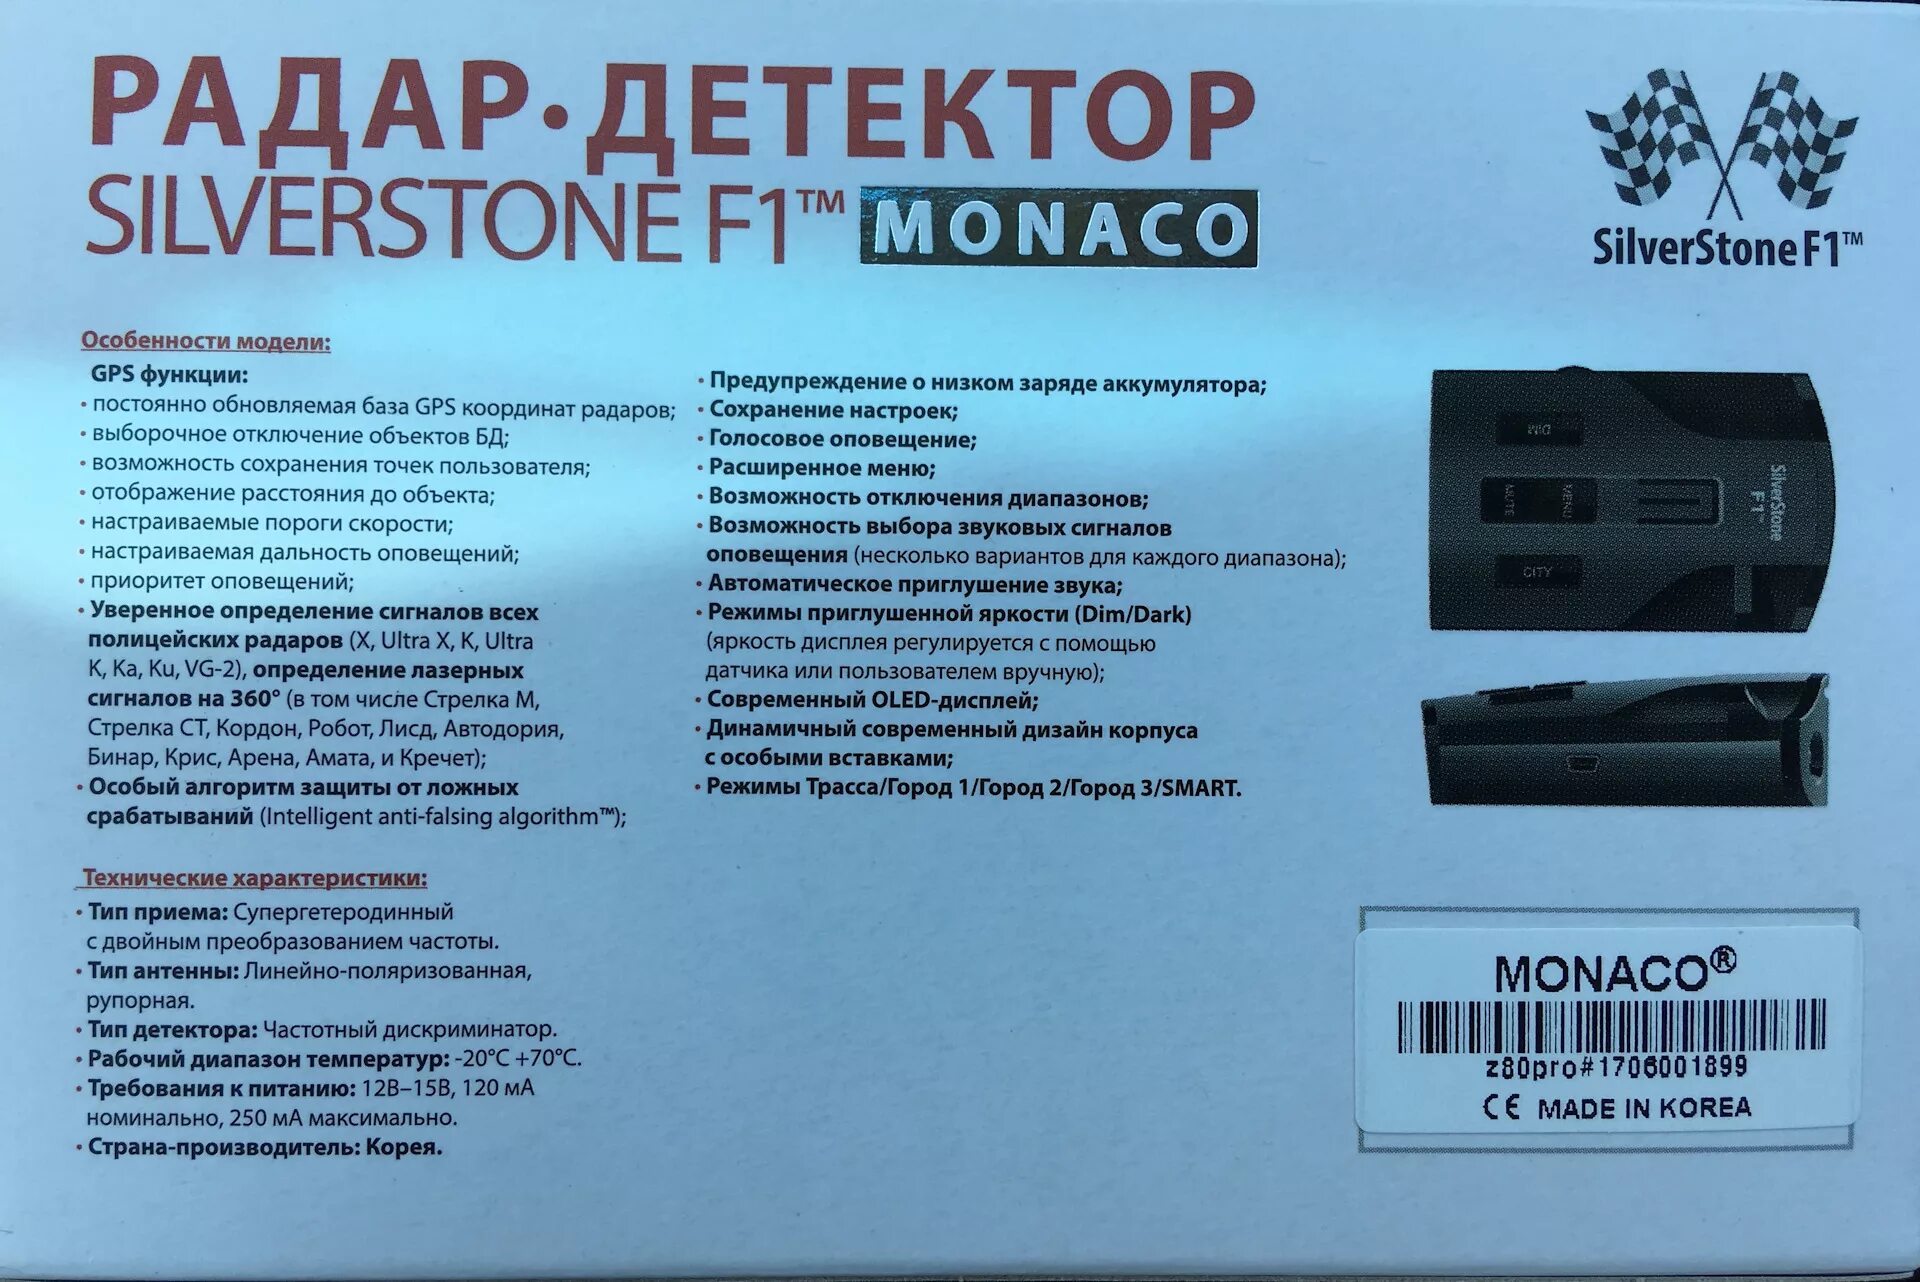 Silverstone f1 Monaco Pro. Радар детектор с экраном скорости. Радар Silverstone. Антирадар 2006 года. Режимы радар детектора